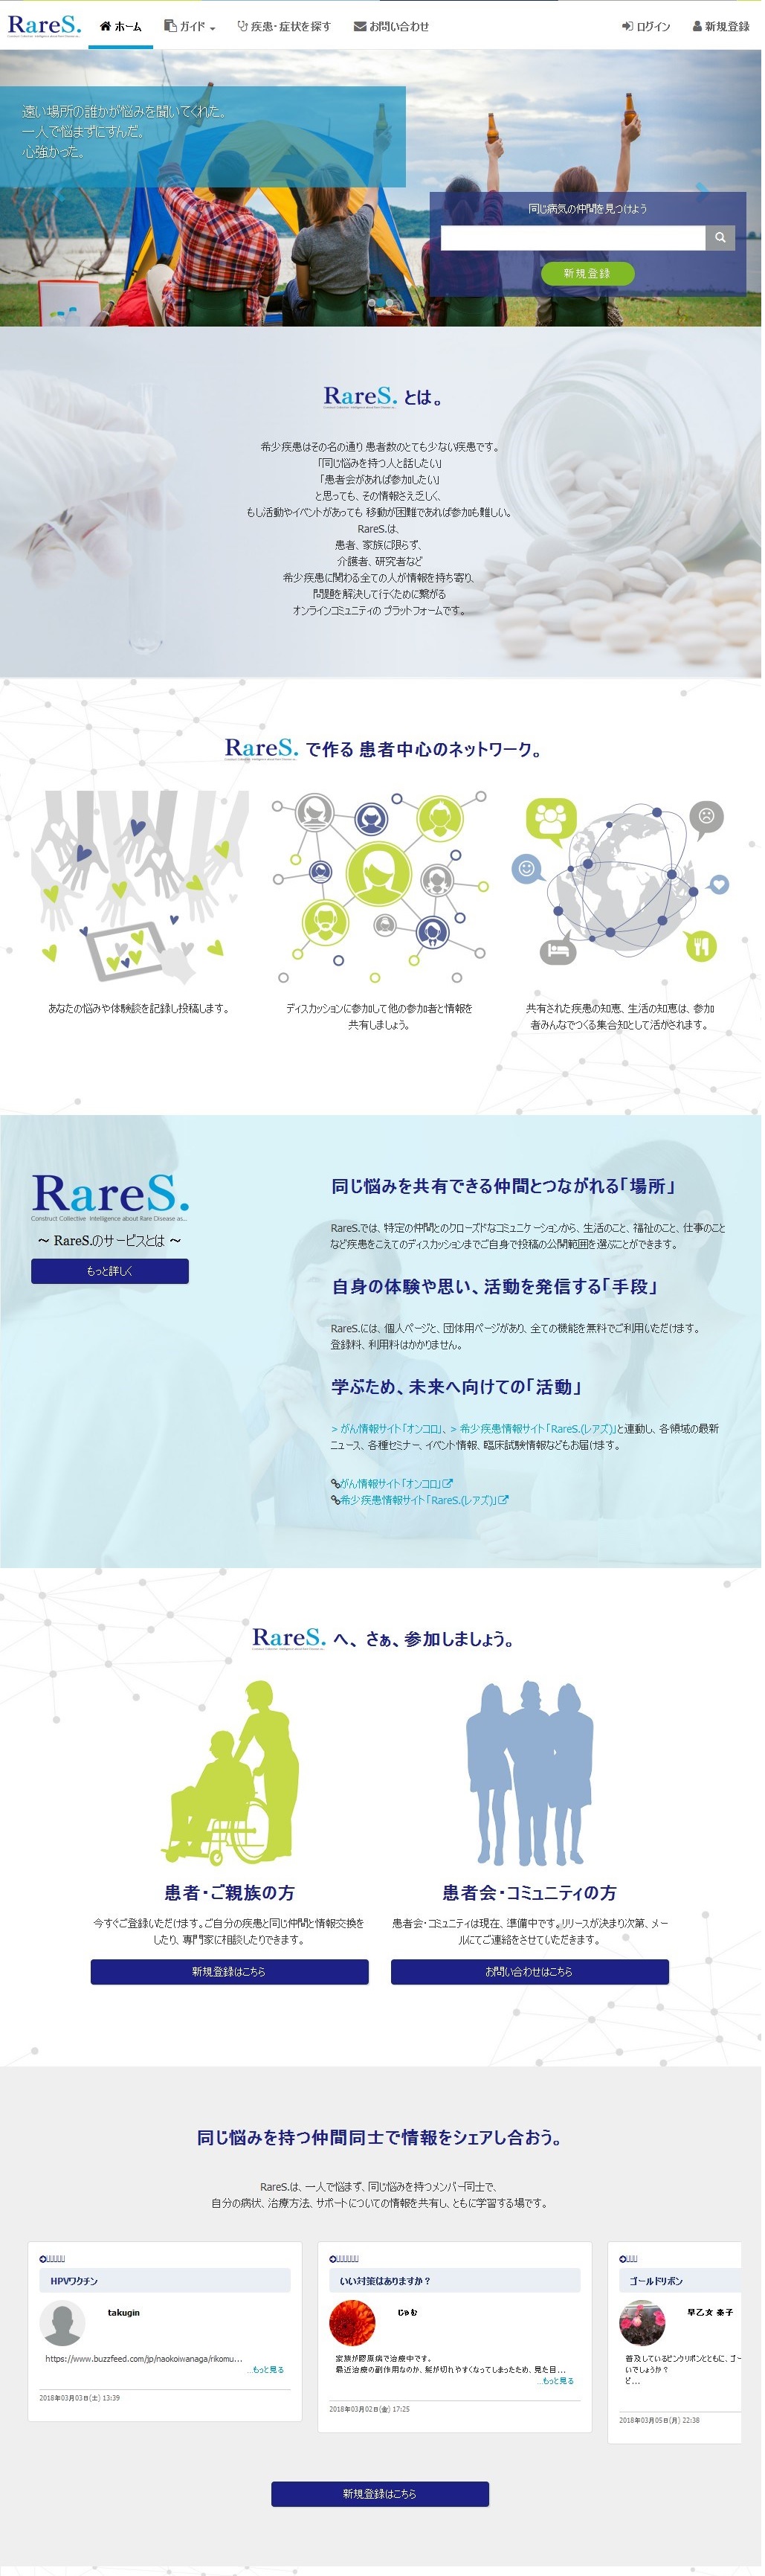 希少疾患の悩みや情報を共有～ポータルサイト「RareS.」を開設